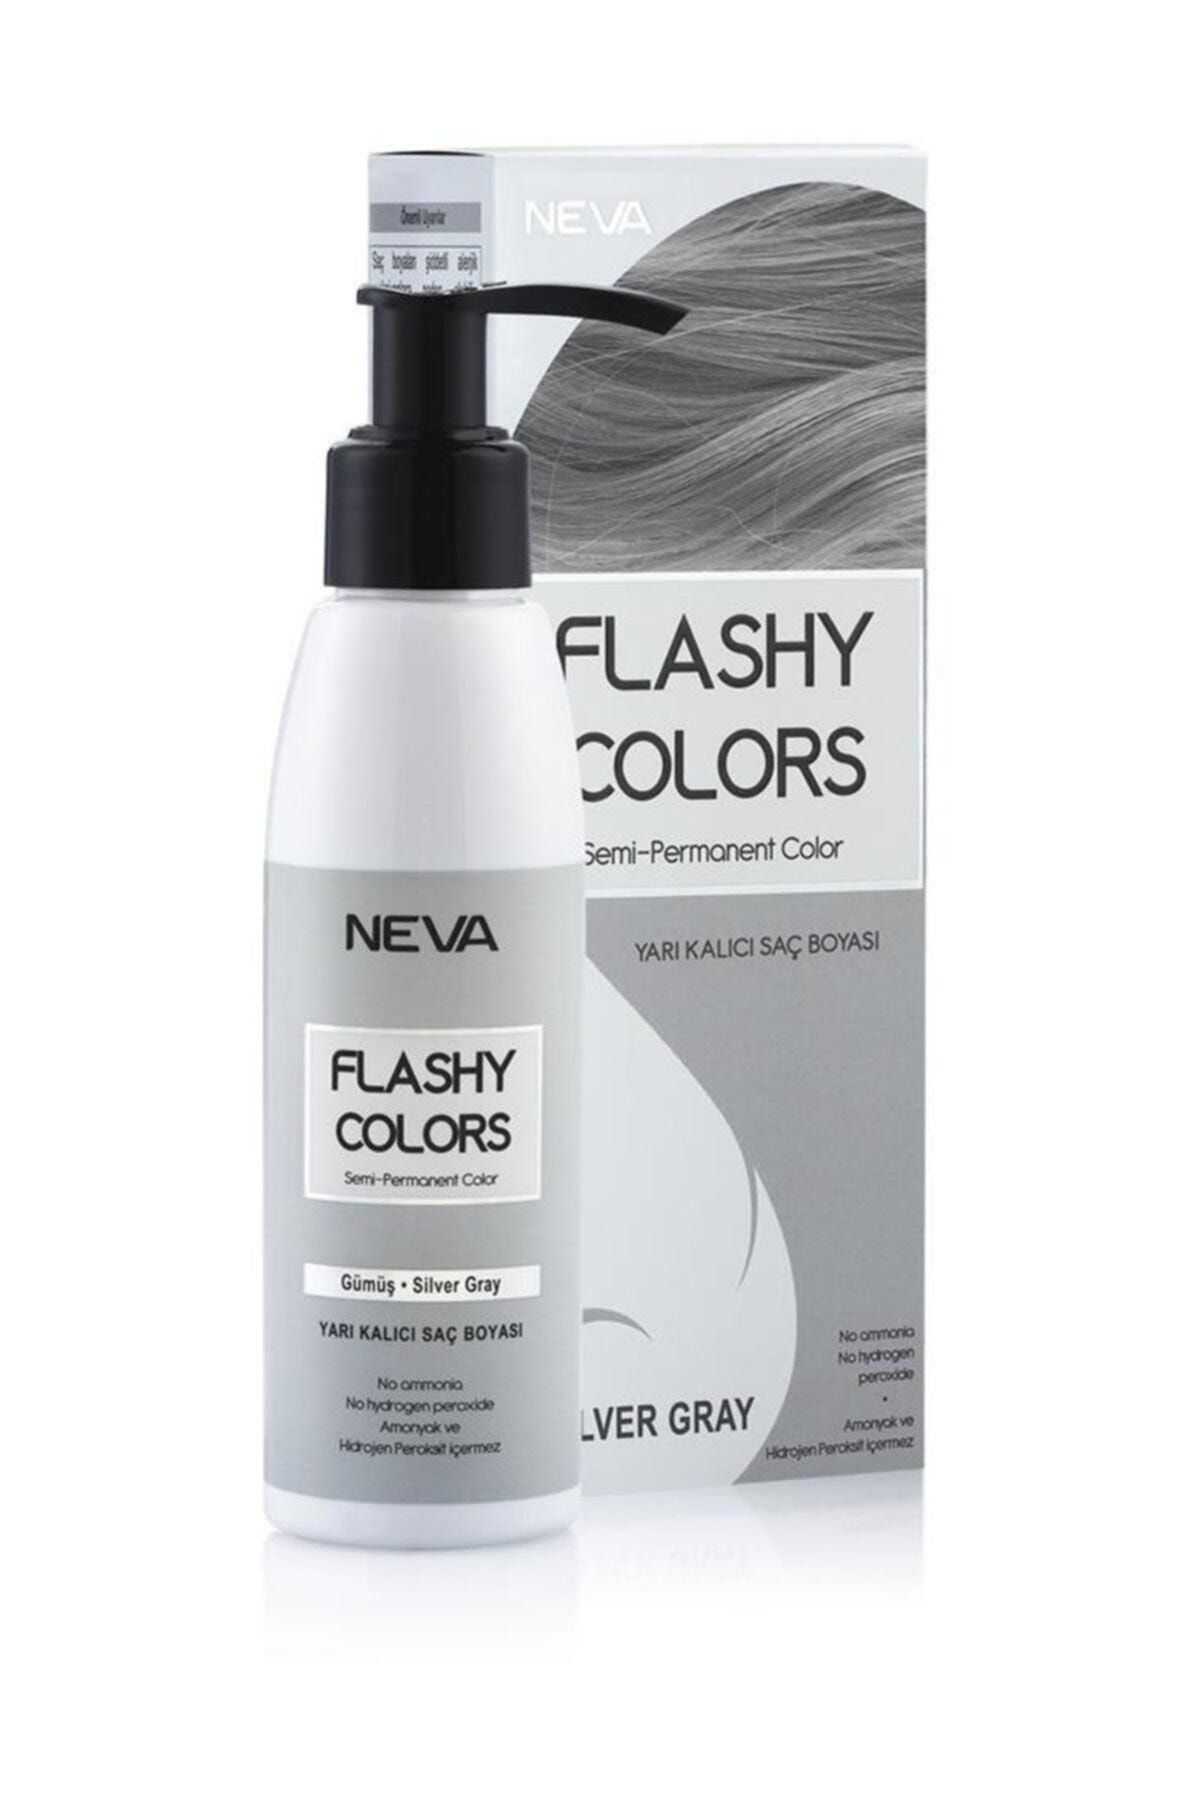 Neva Flashy Colors Yarı Kalıcı Saç Boyası Silver Gray / Gümüş 100 Ml